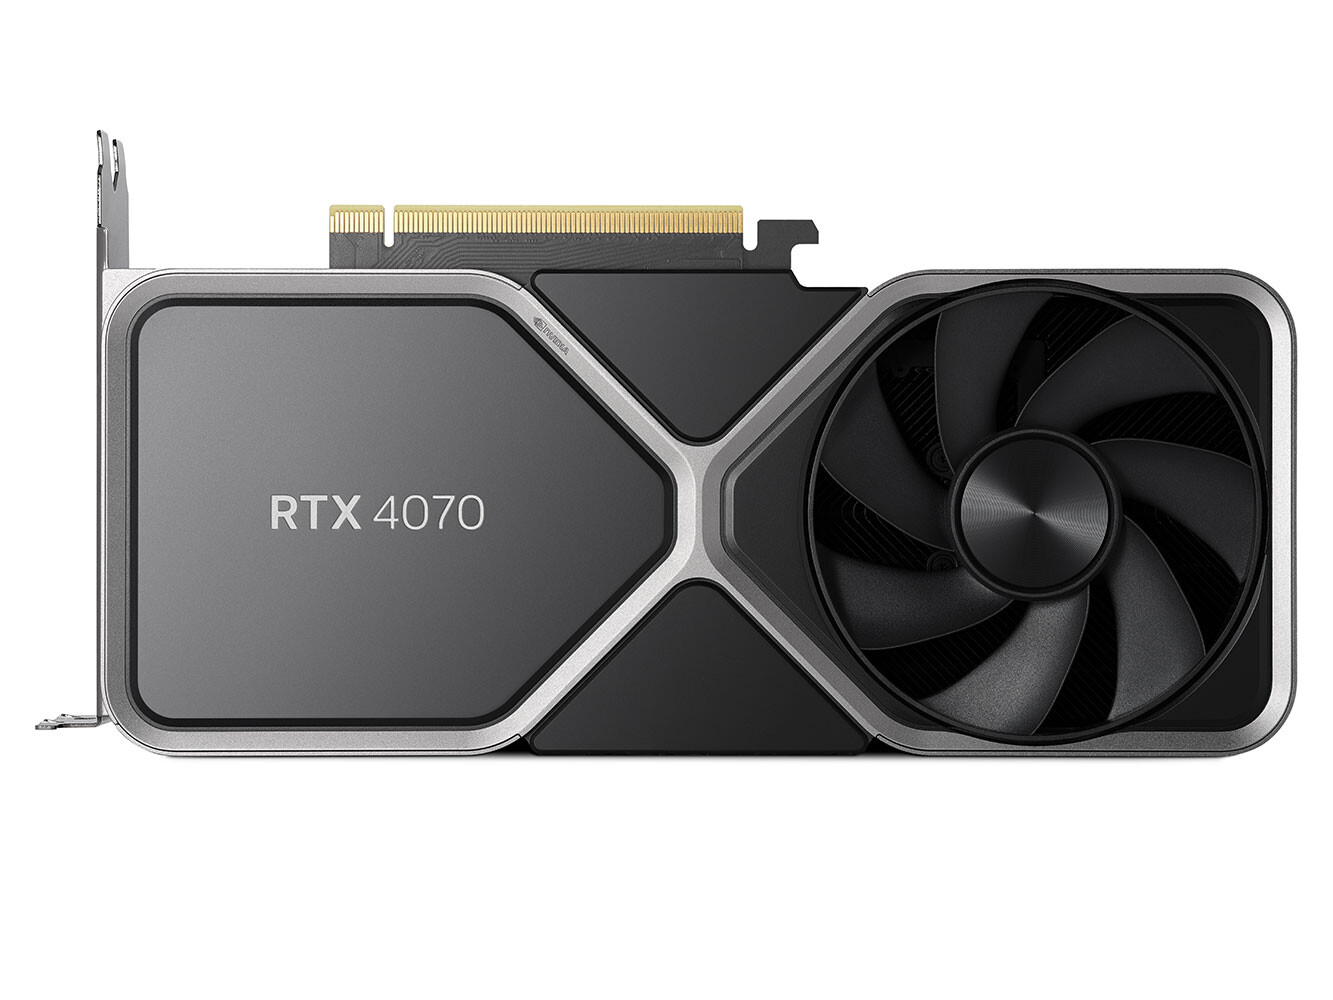 Immagine pubblicata in relazione al seguente contenuto: NVIDIA lancia la GeForce RTX 4070 e promette gaming al top a 1440p | Nome immagine: news34355_NVIDIA-GeForce-RTX-4070-4.jpg